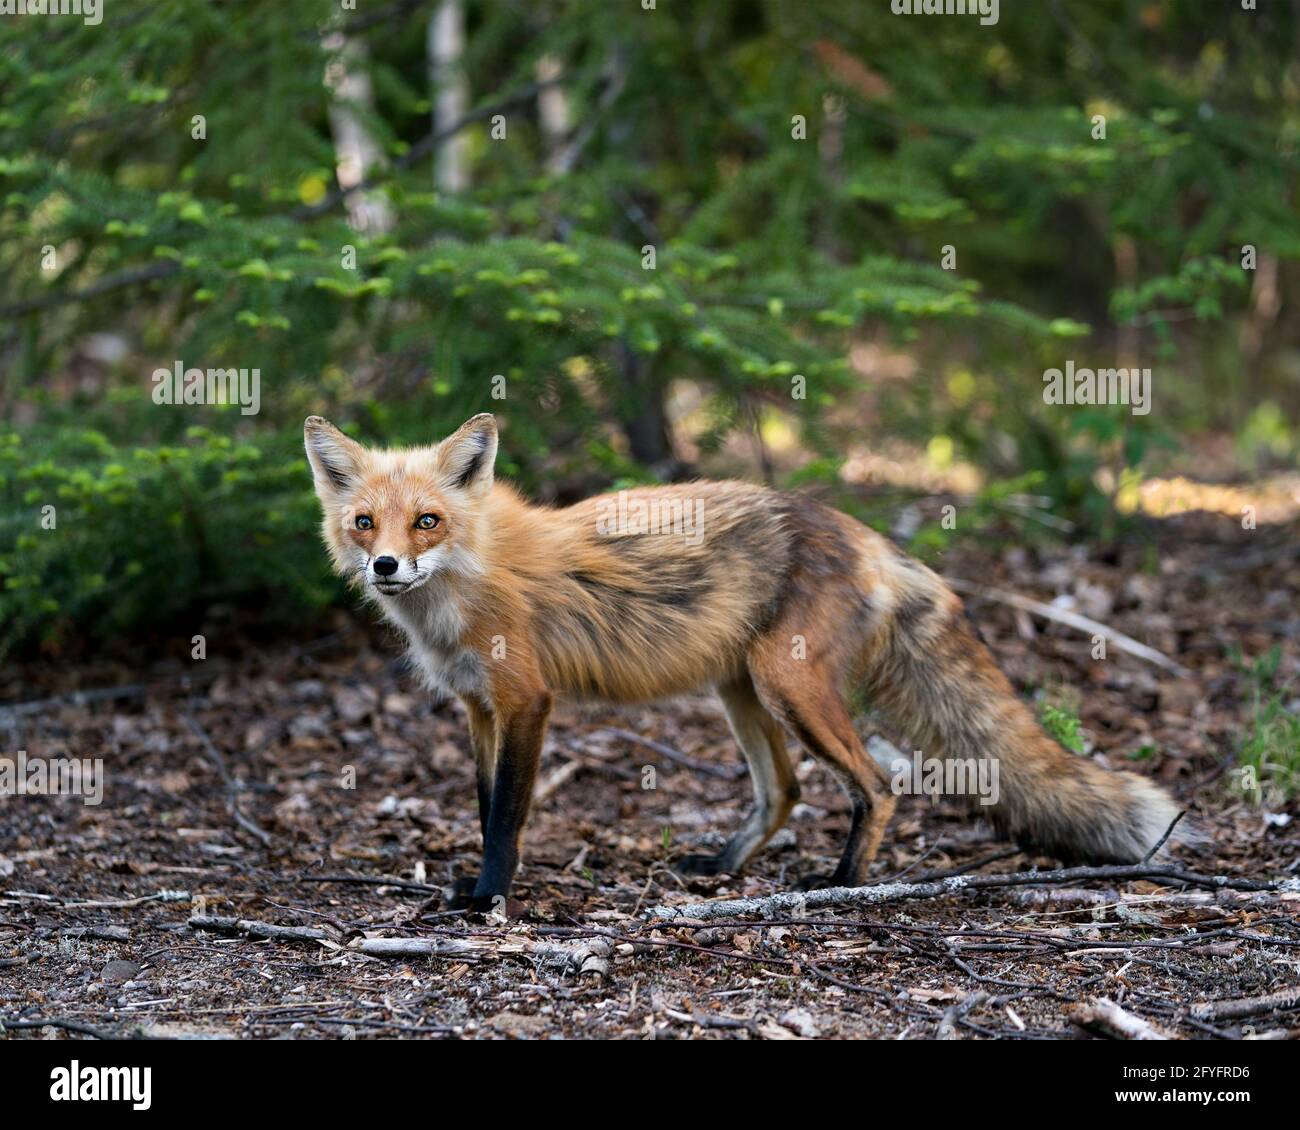 Red Fox primo piano profilo vista laterale in primavera con sfondo di alberi di conifere nel suo ambiente e habitat. Immagine FOX. Immagine. Verticale. Foto Stock